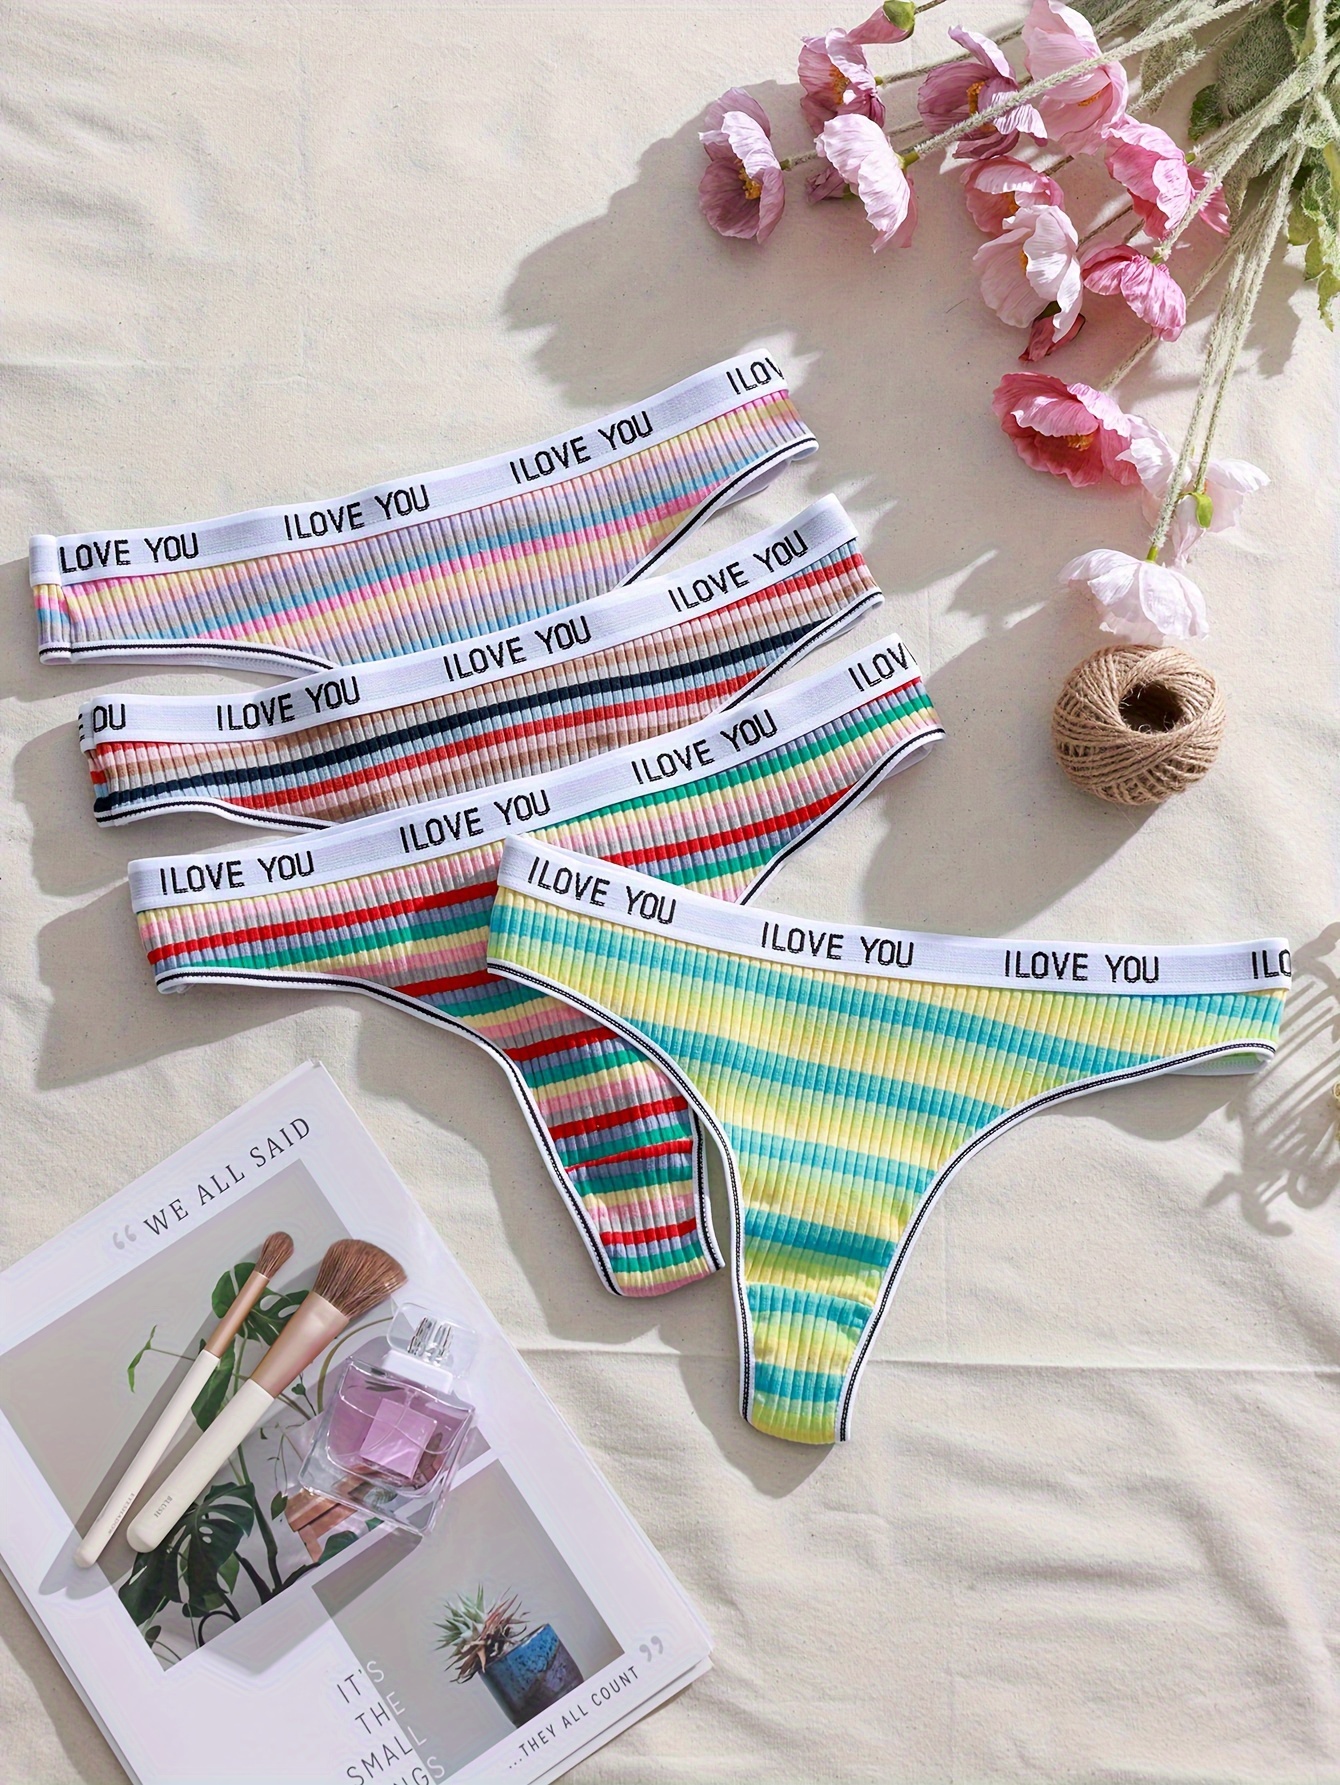 Striped Panties - Temu